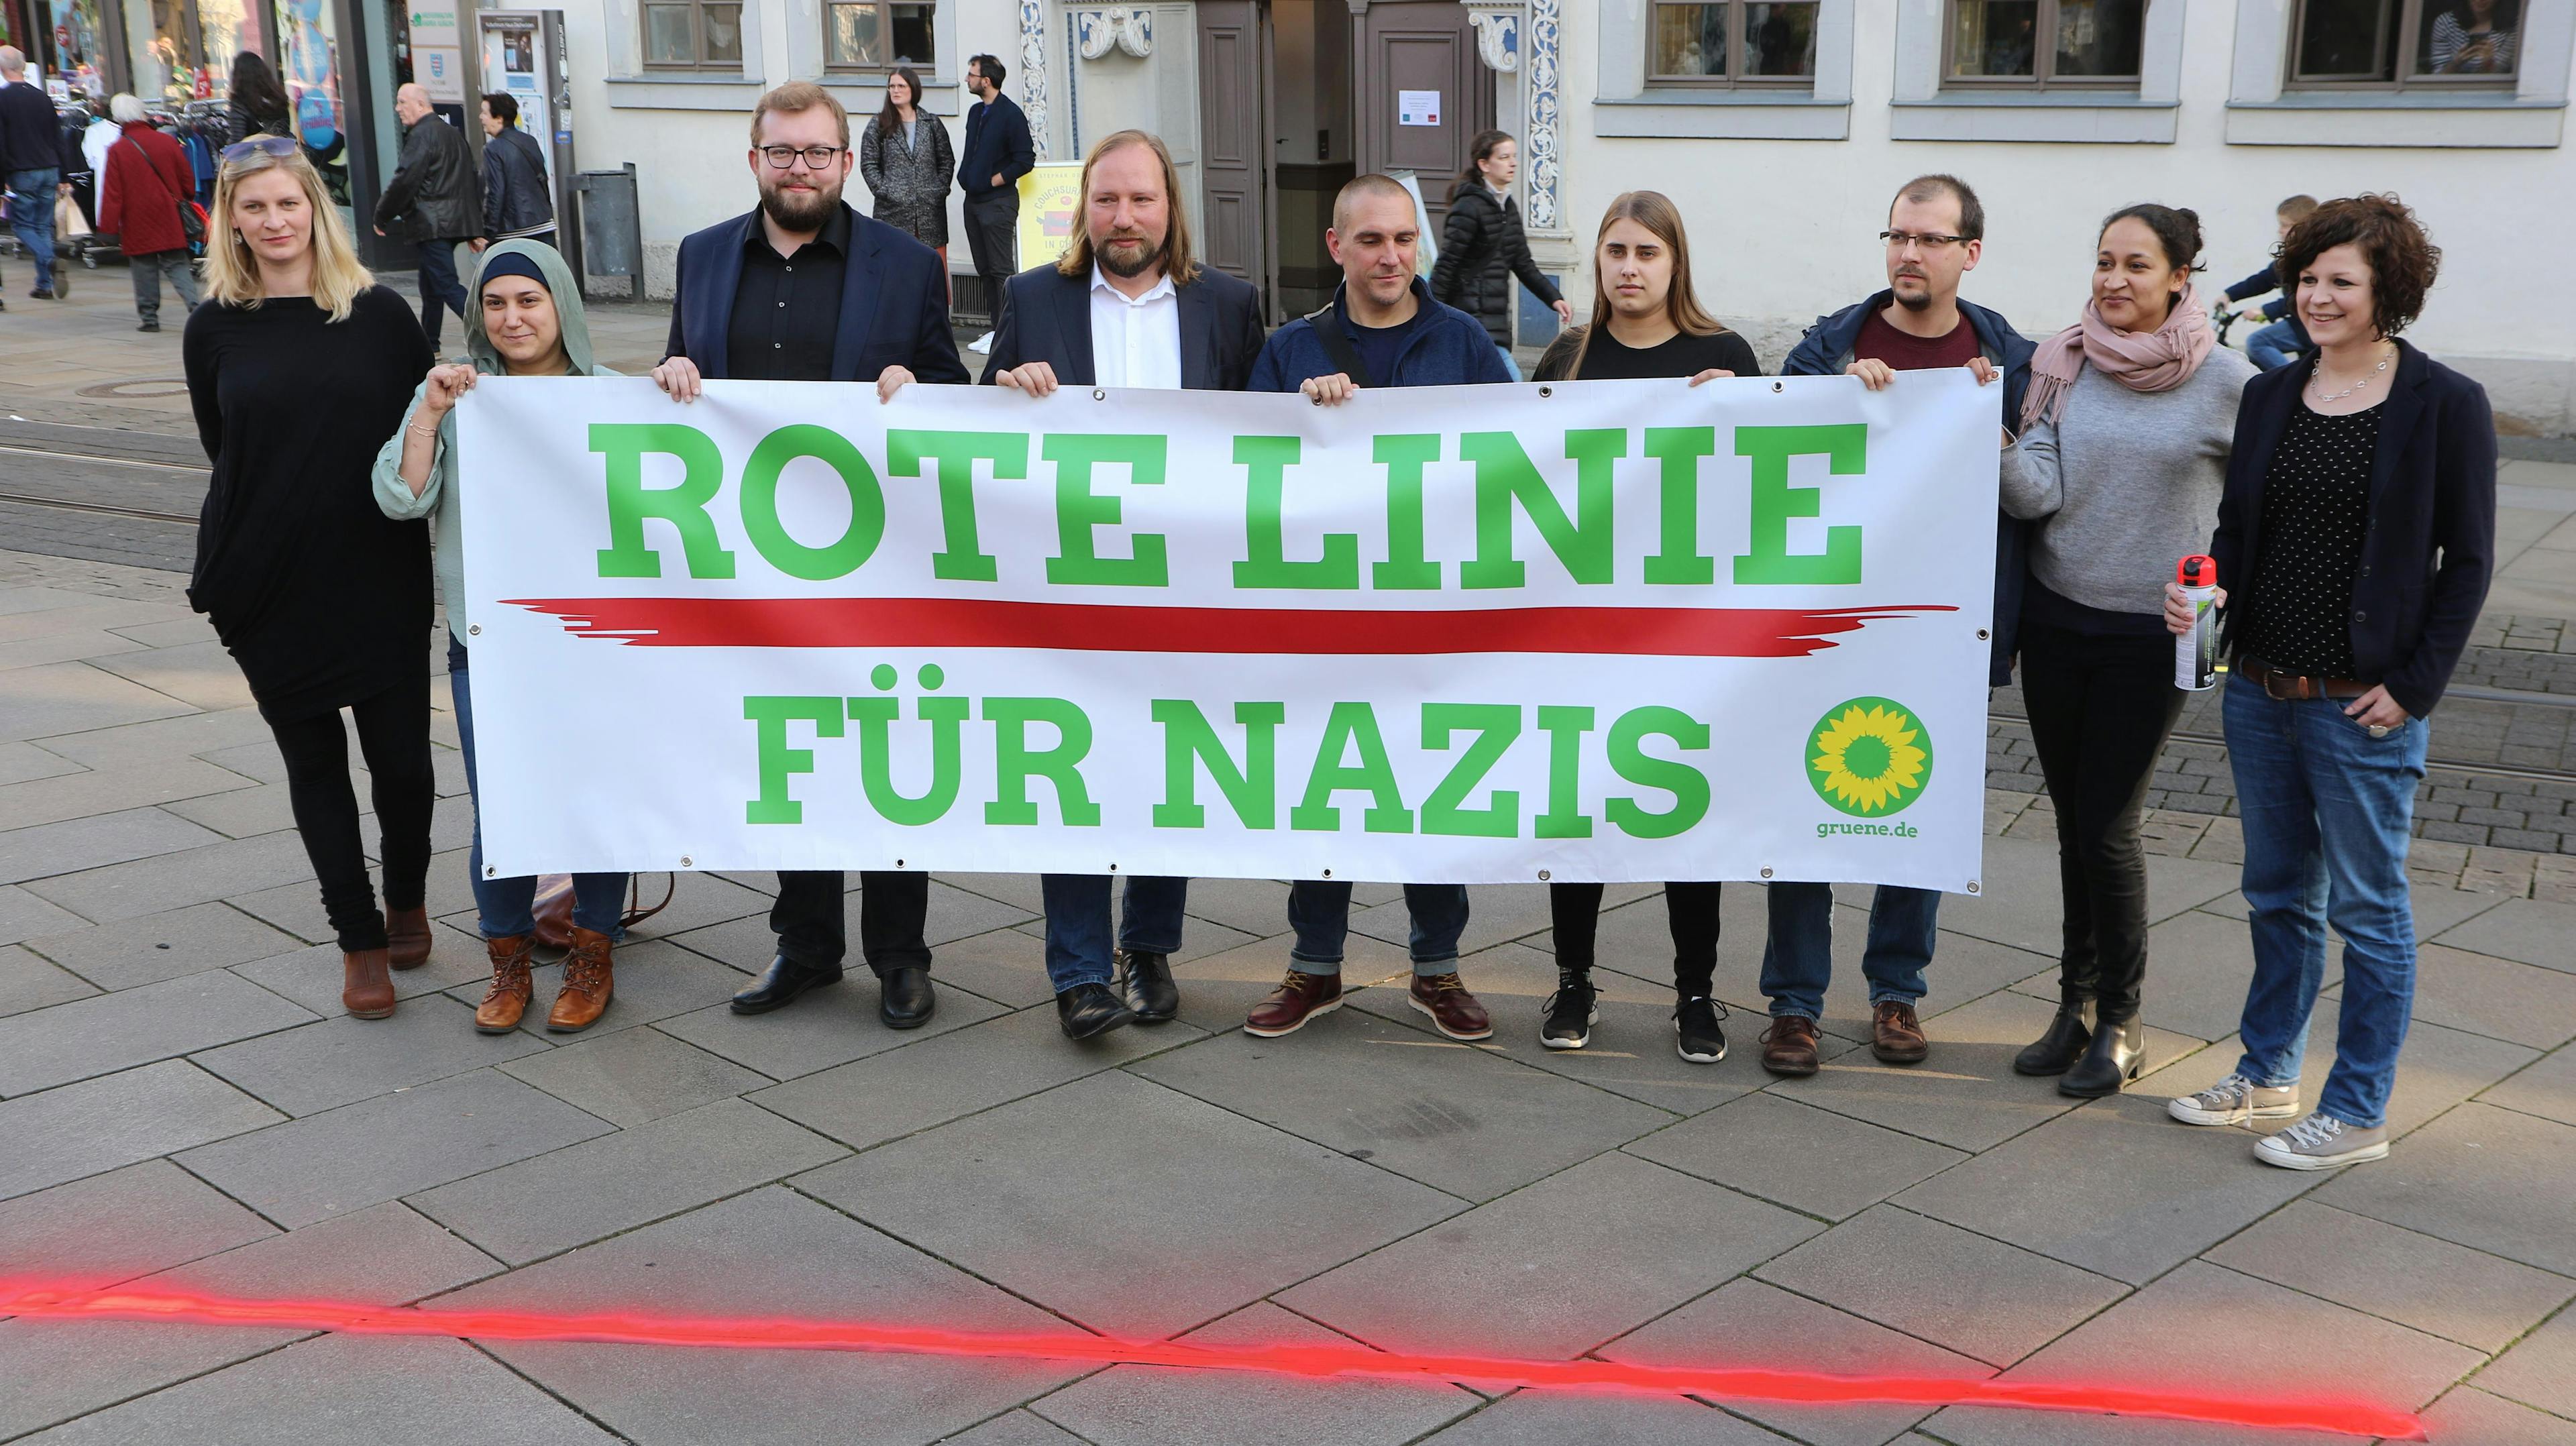 Mehrere Menschen halten ein Banner mit der Aufschrift "Rote Linie für Nazis", davor ist auf den Boden eine rote Linie gesprayt.